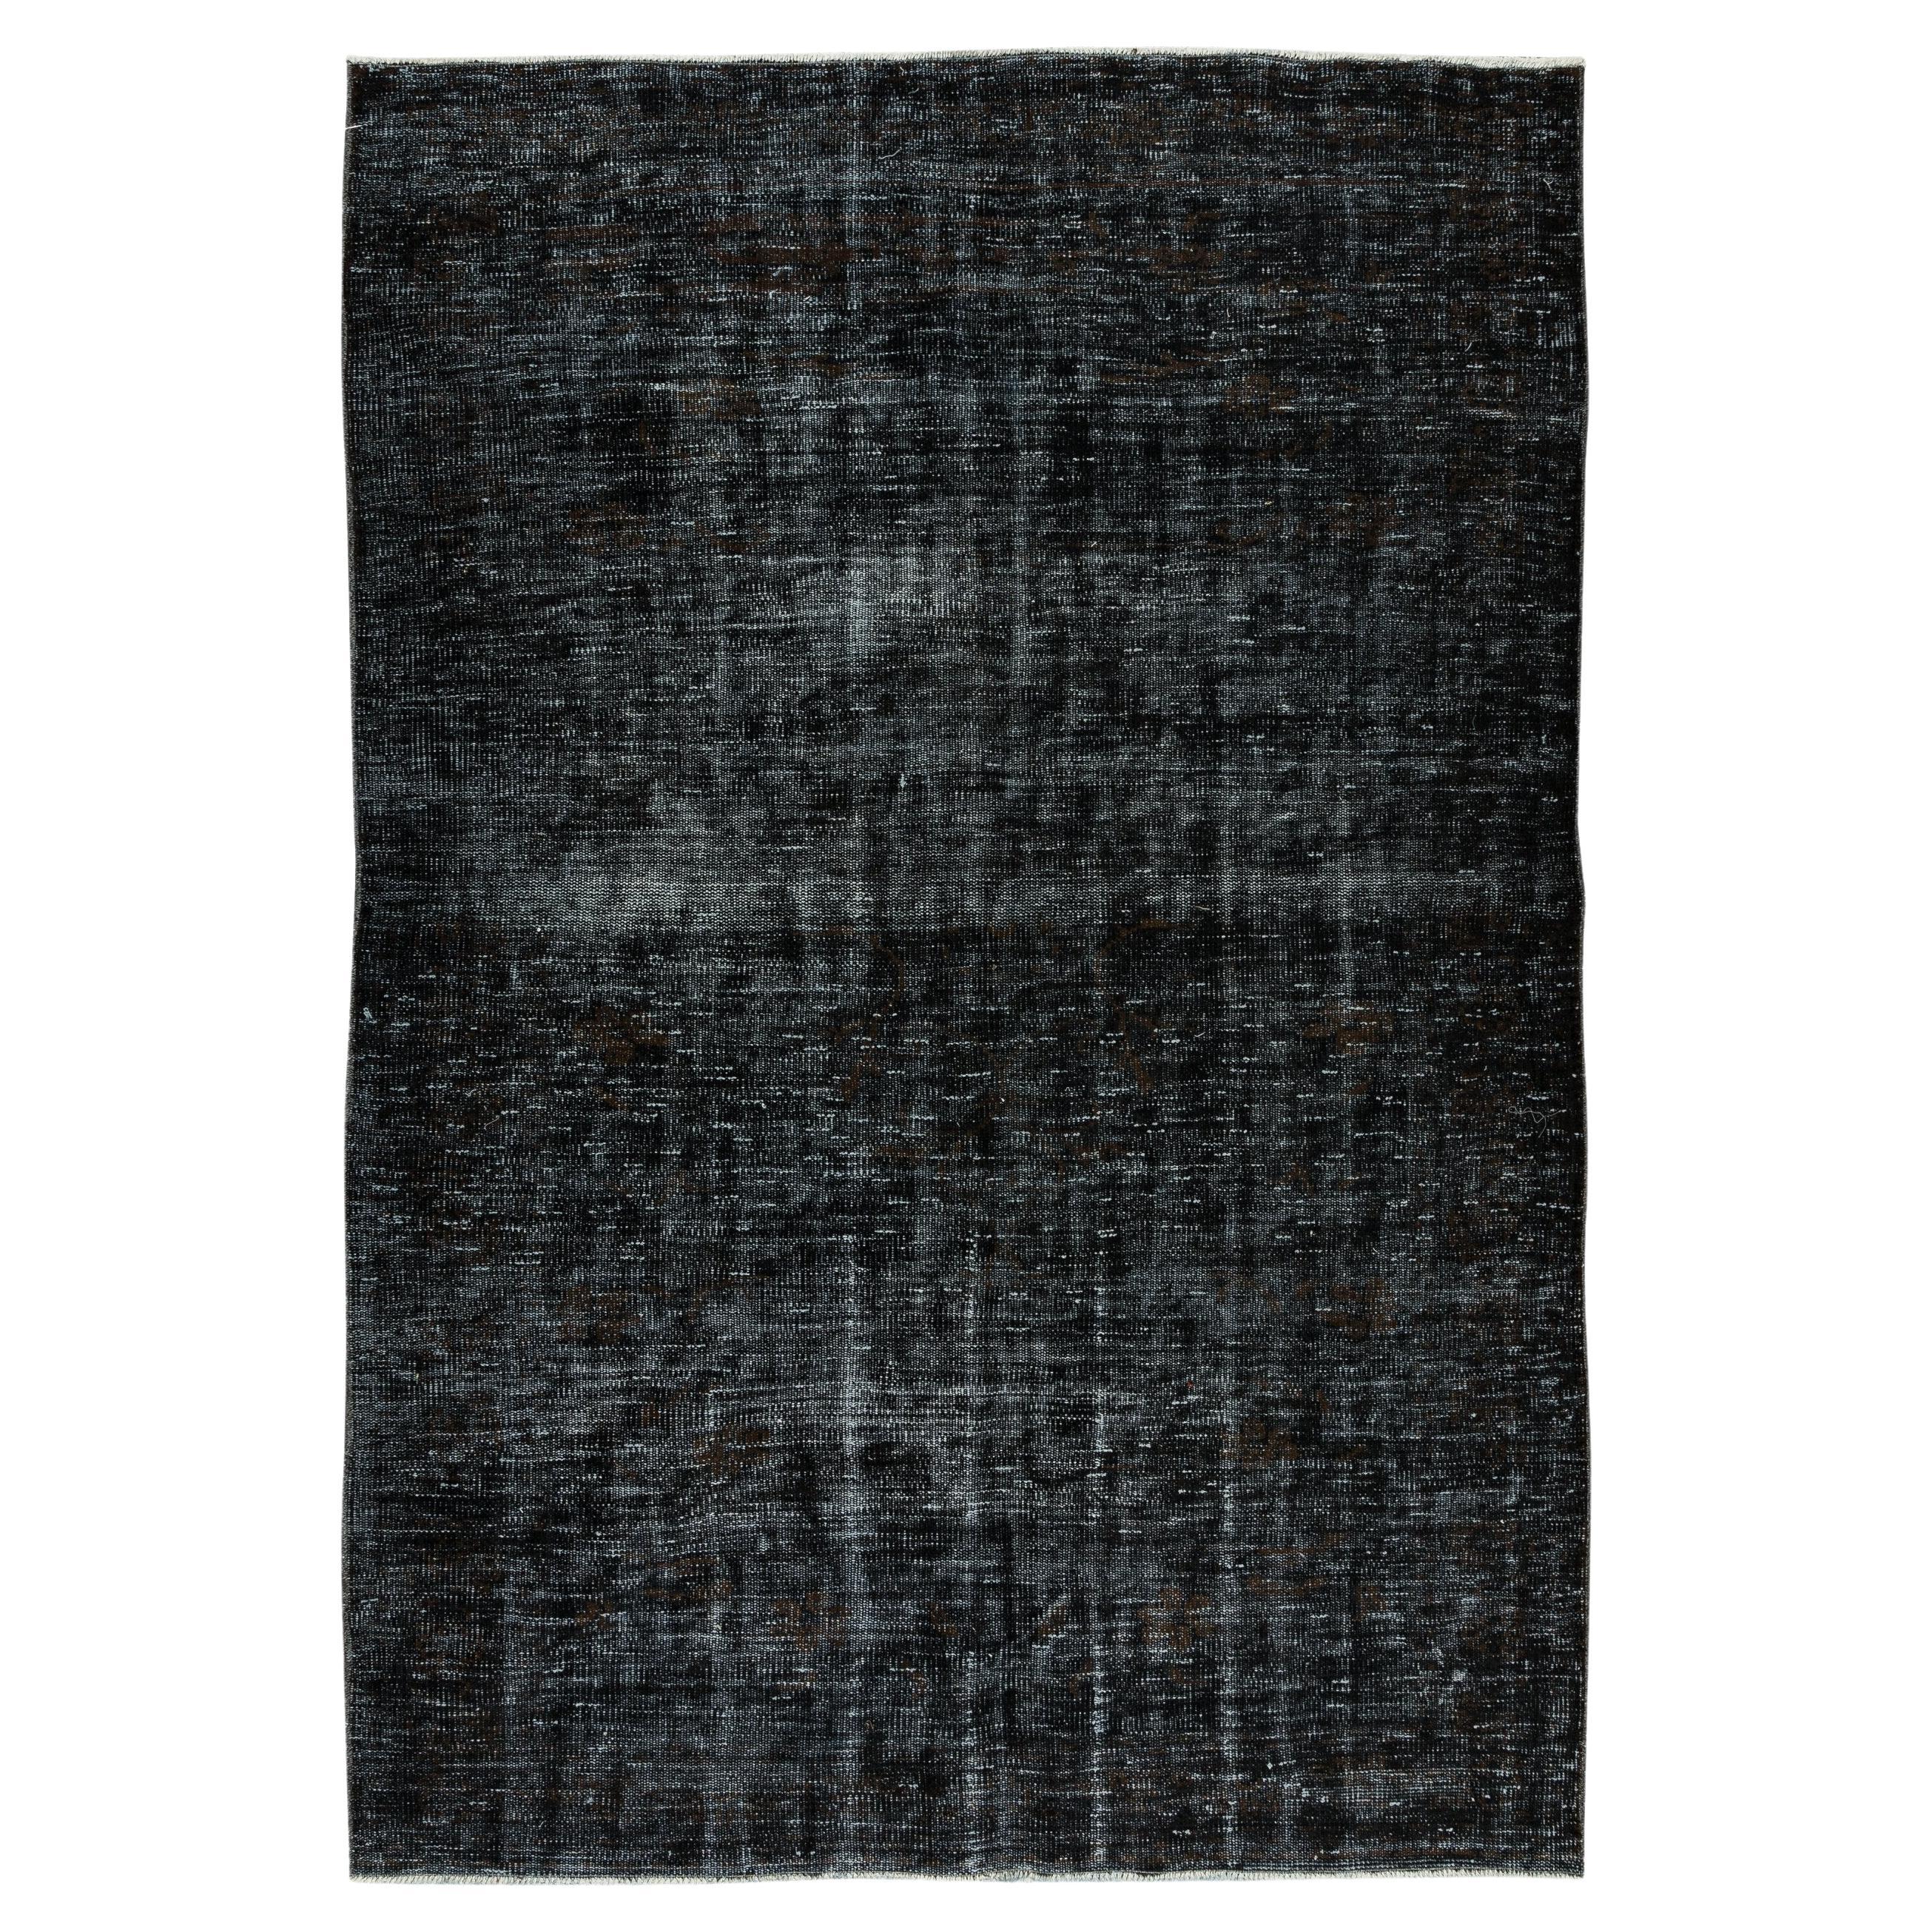 Tapis turc contemporain teinté à la main en noir, tapis artisanal vintage